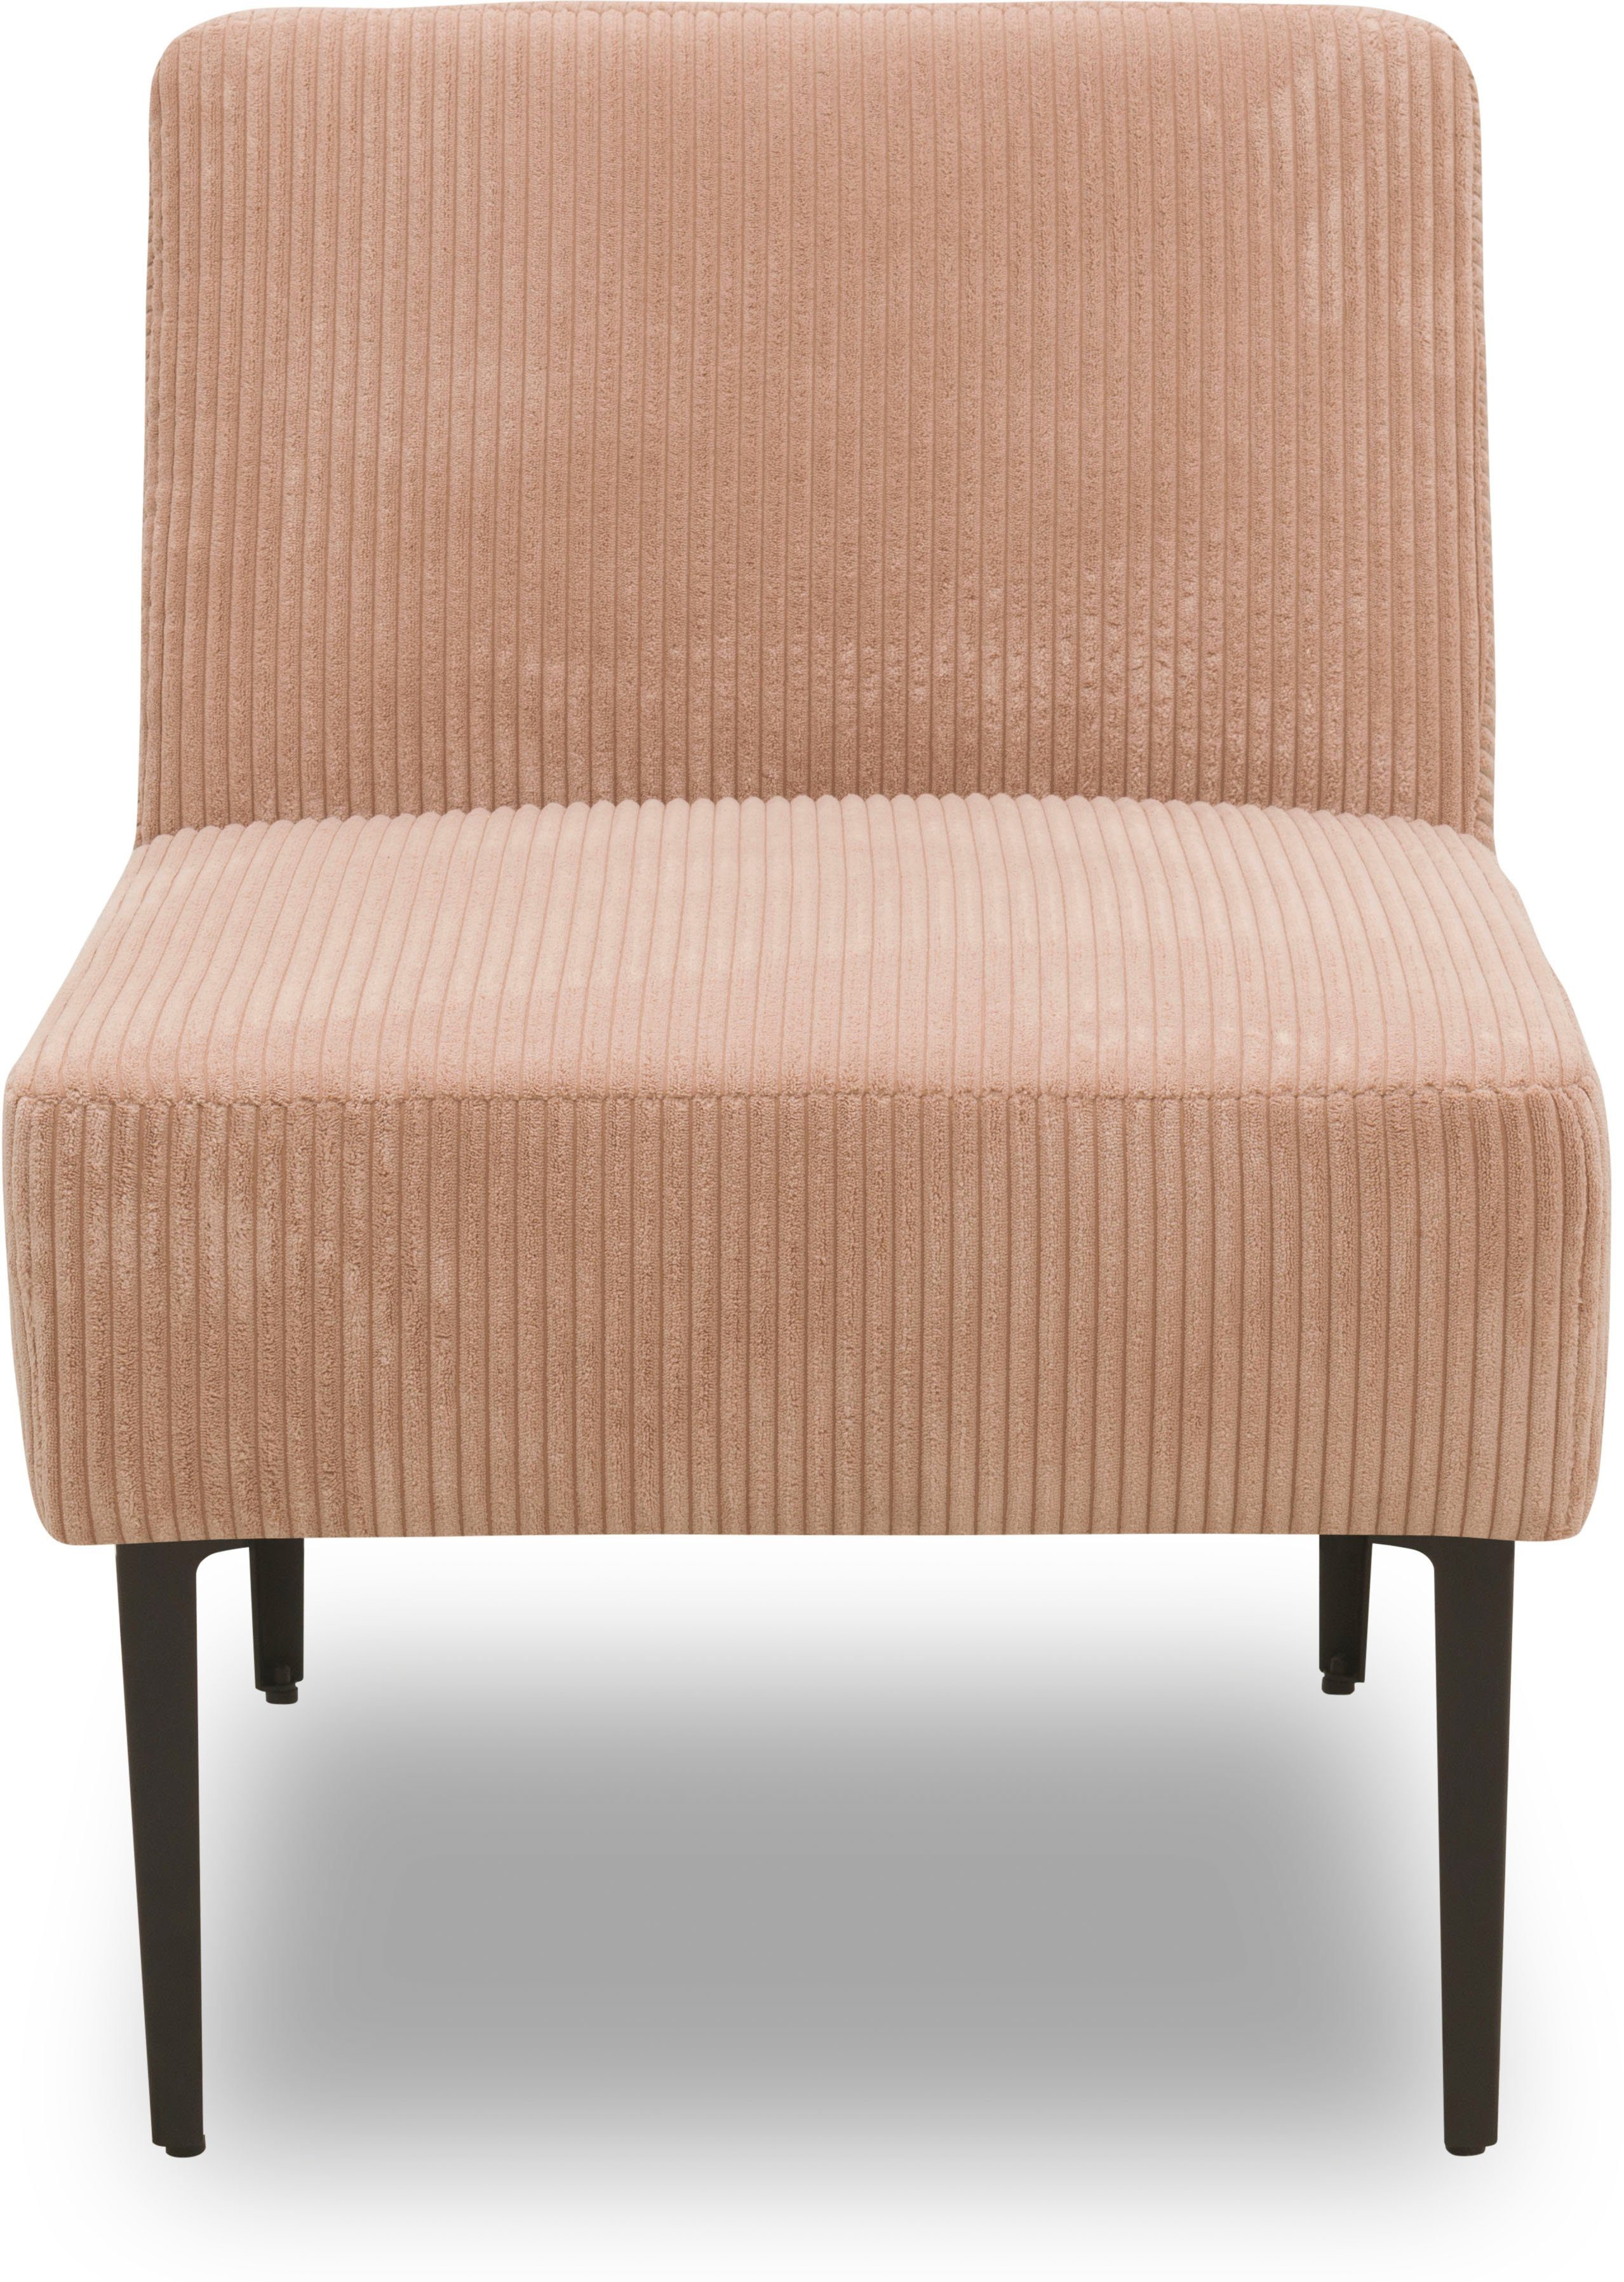 DOMO collection Sessel 700010, für individuelle Zusammenstellung eines persönlichen Sofas rose